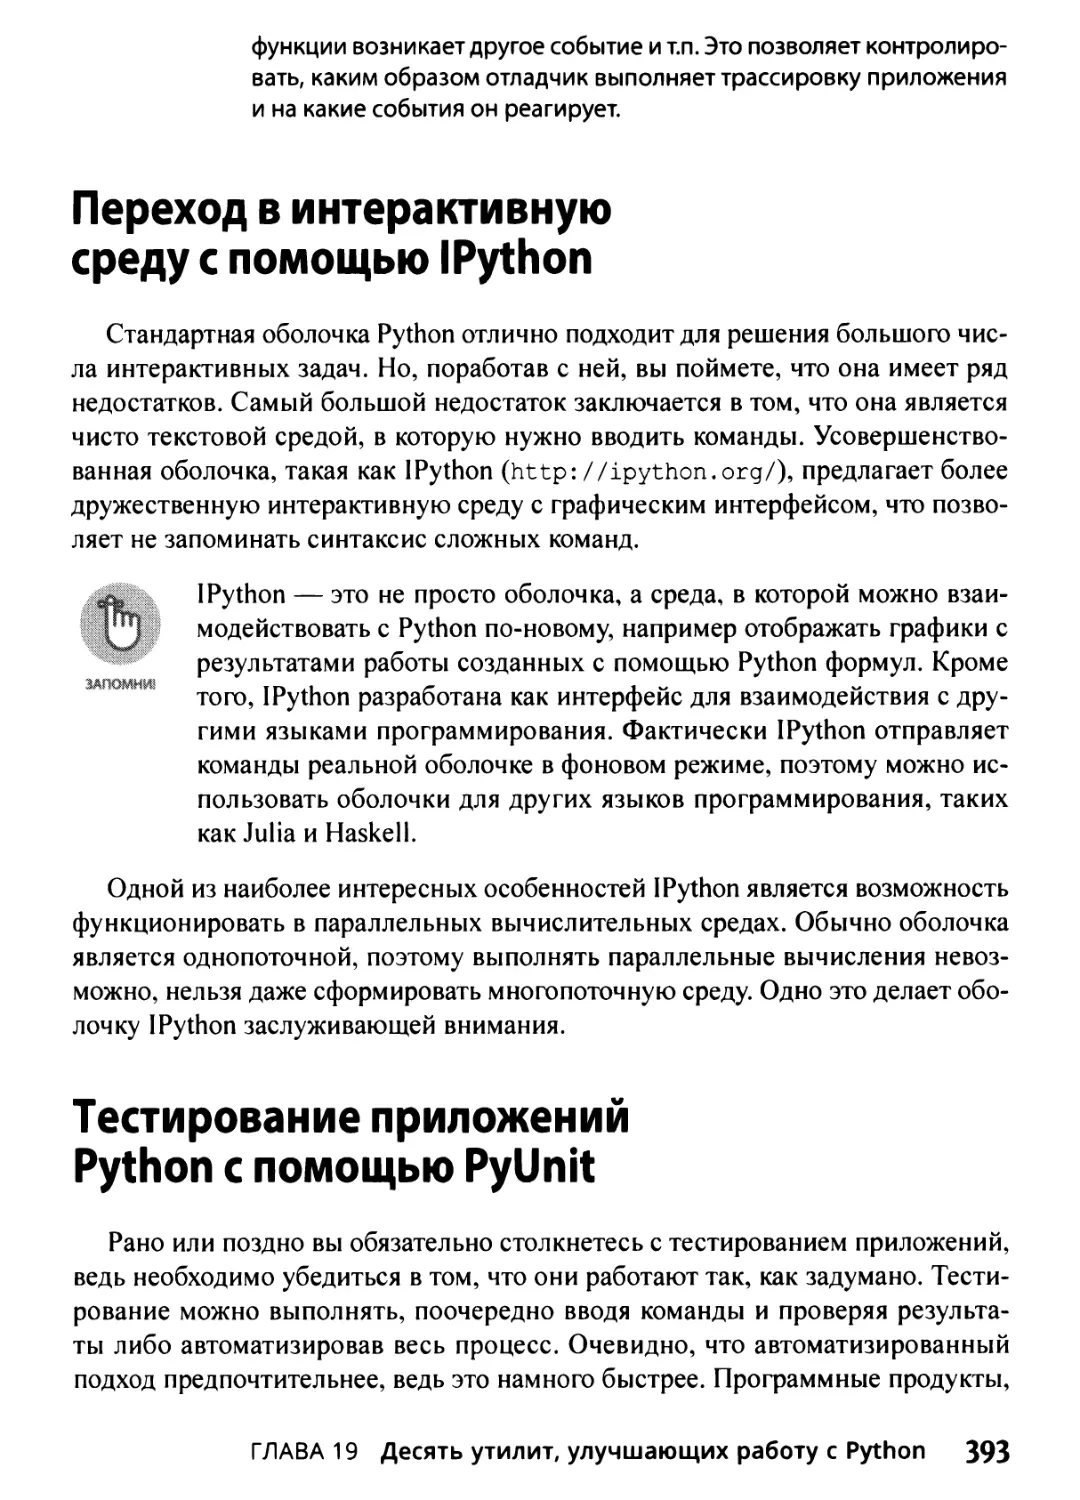 Переход в интерактивную среду с помощью IPython
Тестирование приложений Python с помощью PyUnit